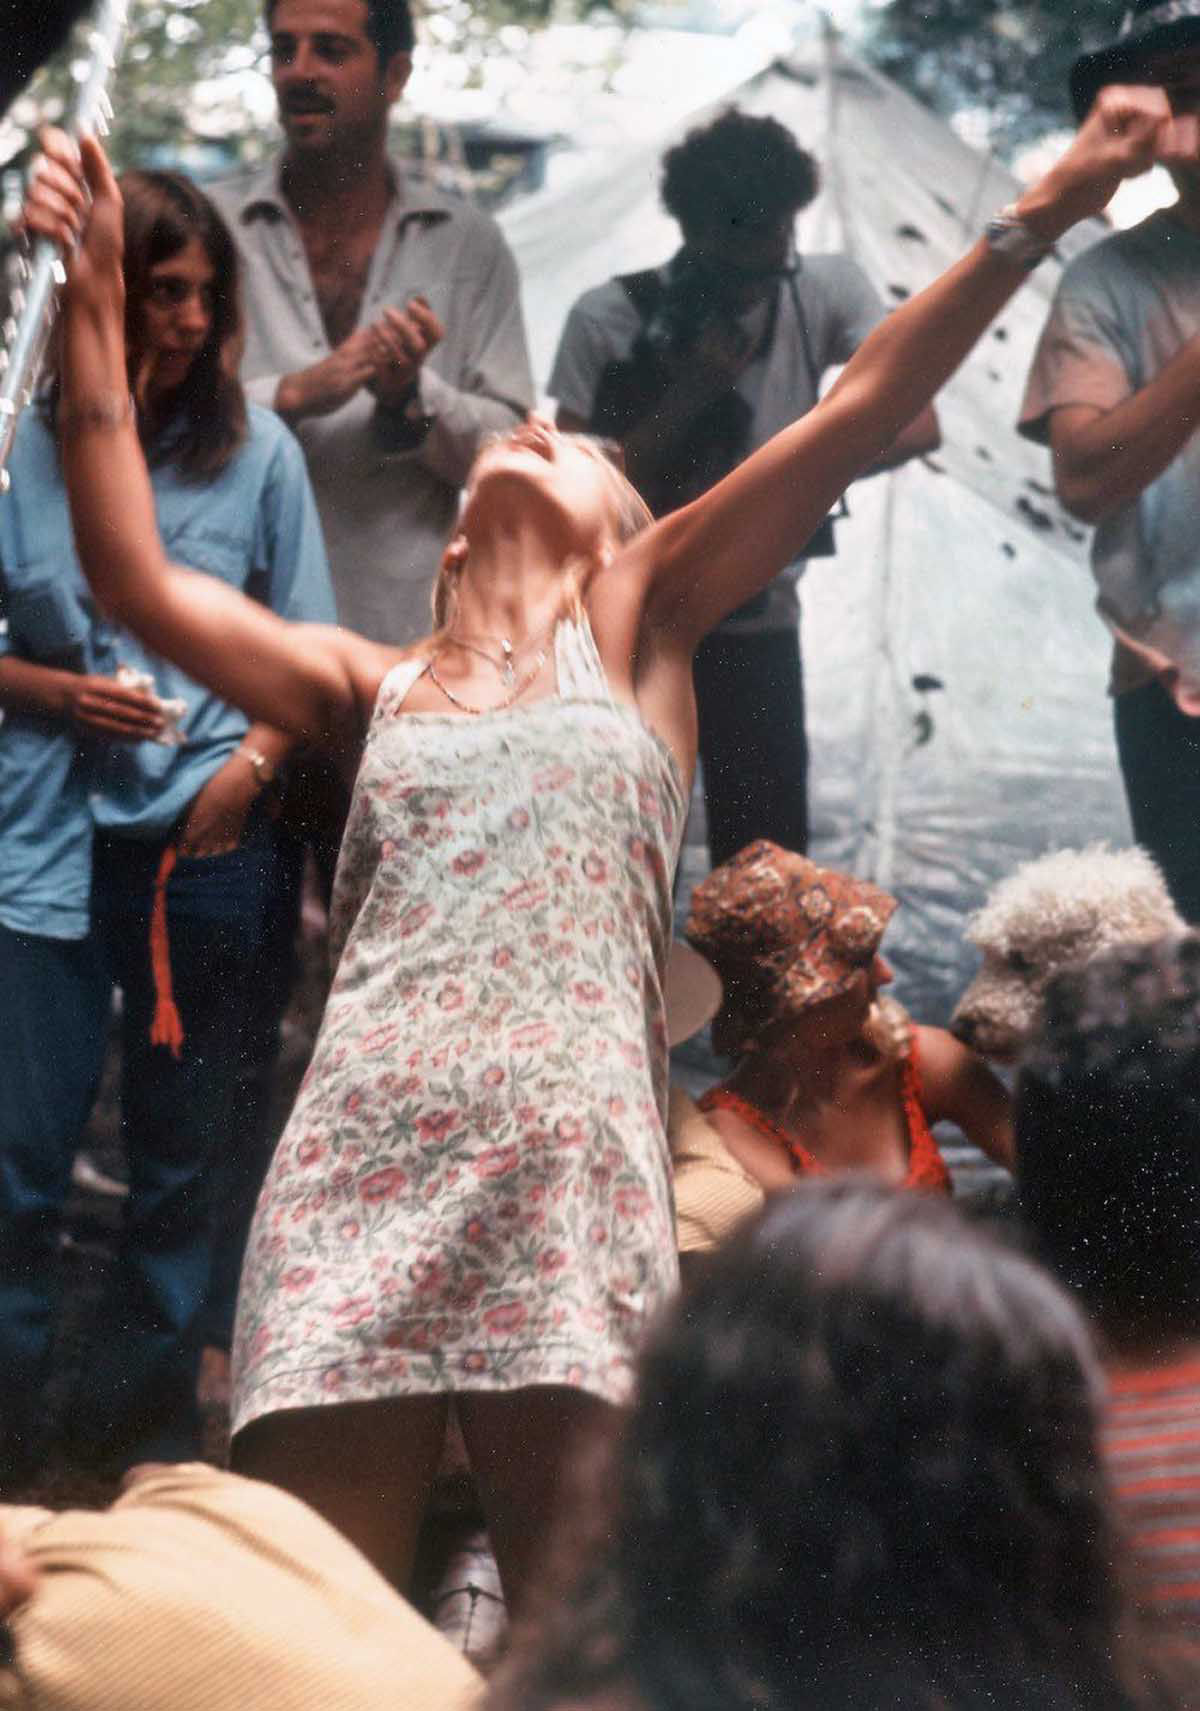 Fotos impressionantes retratam a moda rebelde de Woodstock em 1969 45